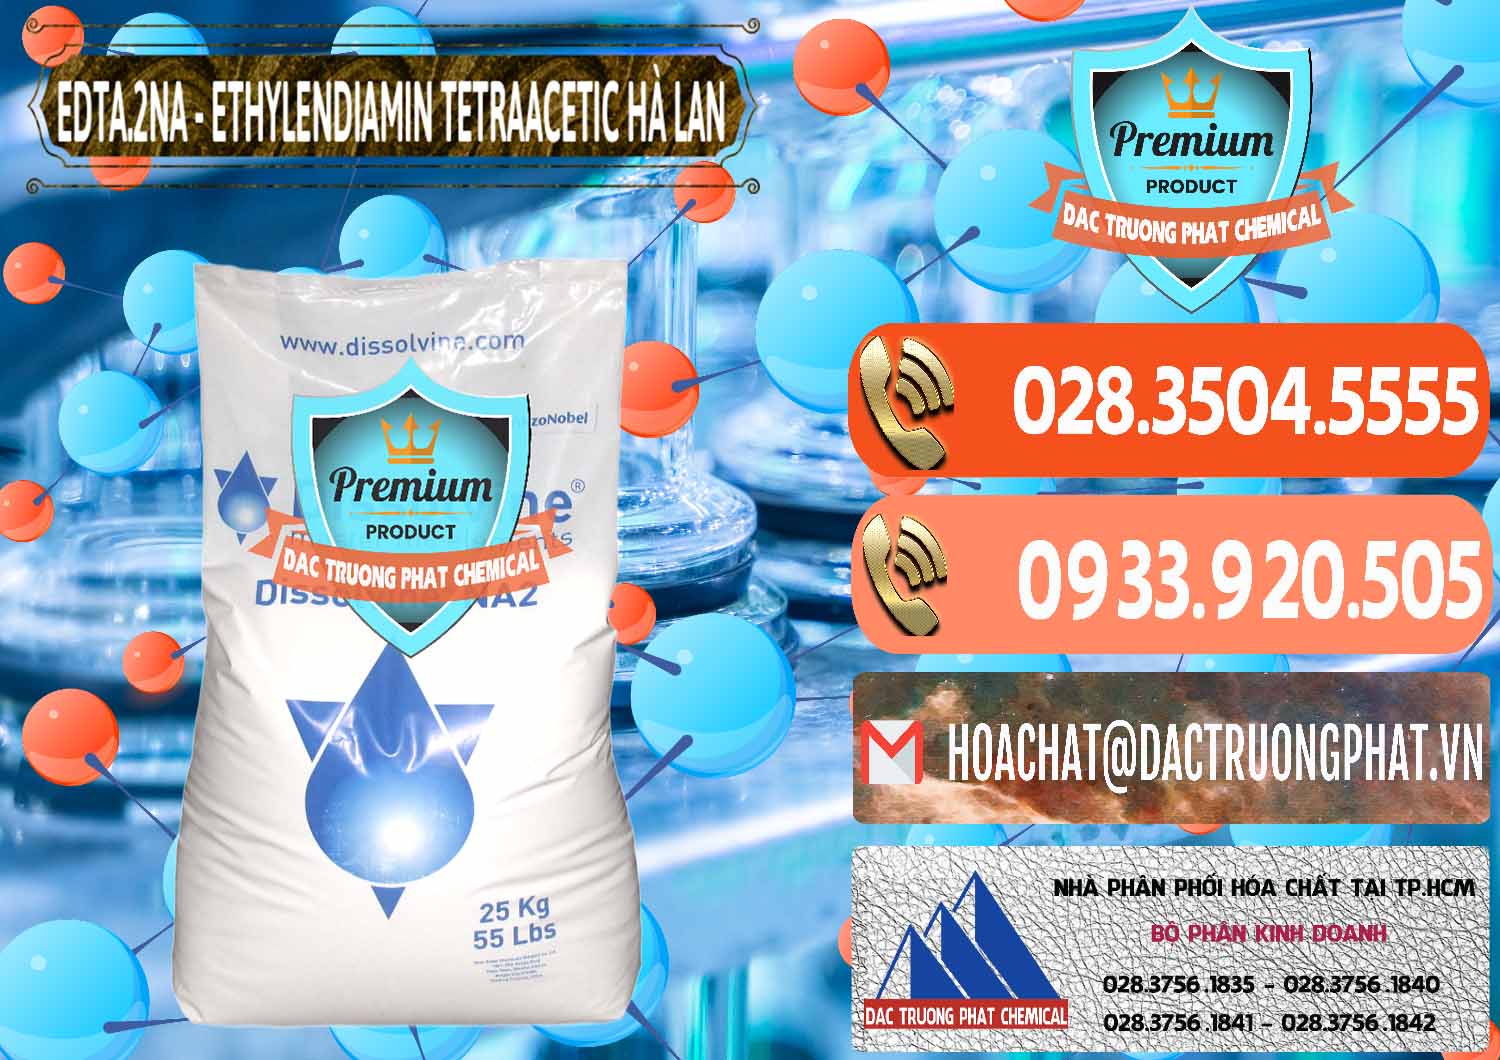 Chuyên bán _ cung ứng EDTA.2NA - Ethylendiamin Tetraacetic Dissolvine Hà Lan Netherlands - 0064 - Chuyên cung cấp & phân phối hóa chất tại TP.HCM - hoachatmientay.com